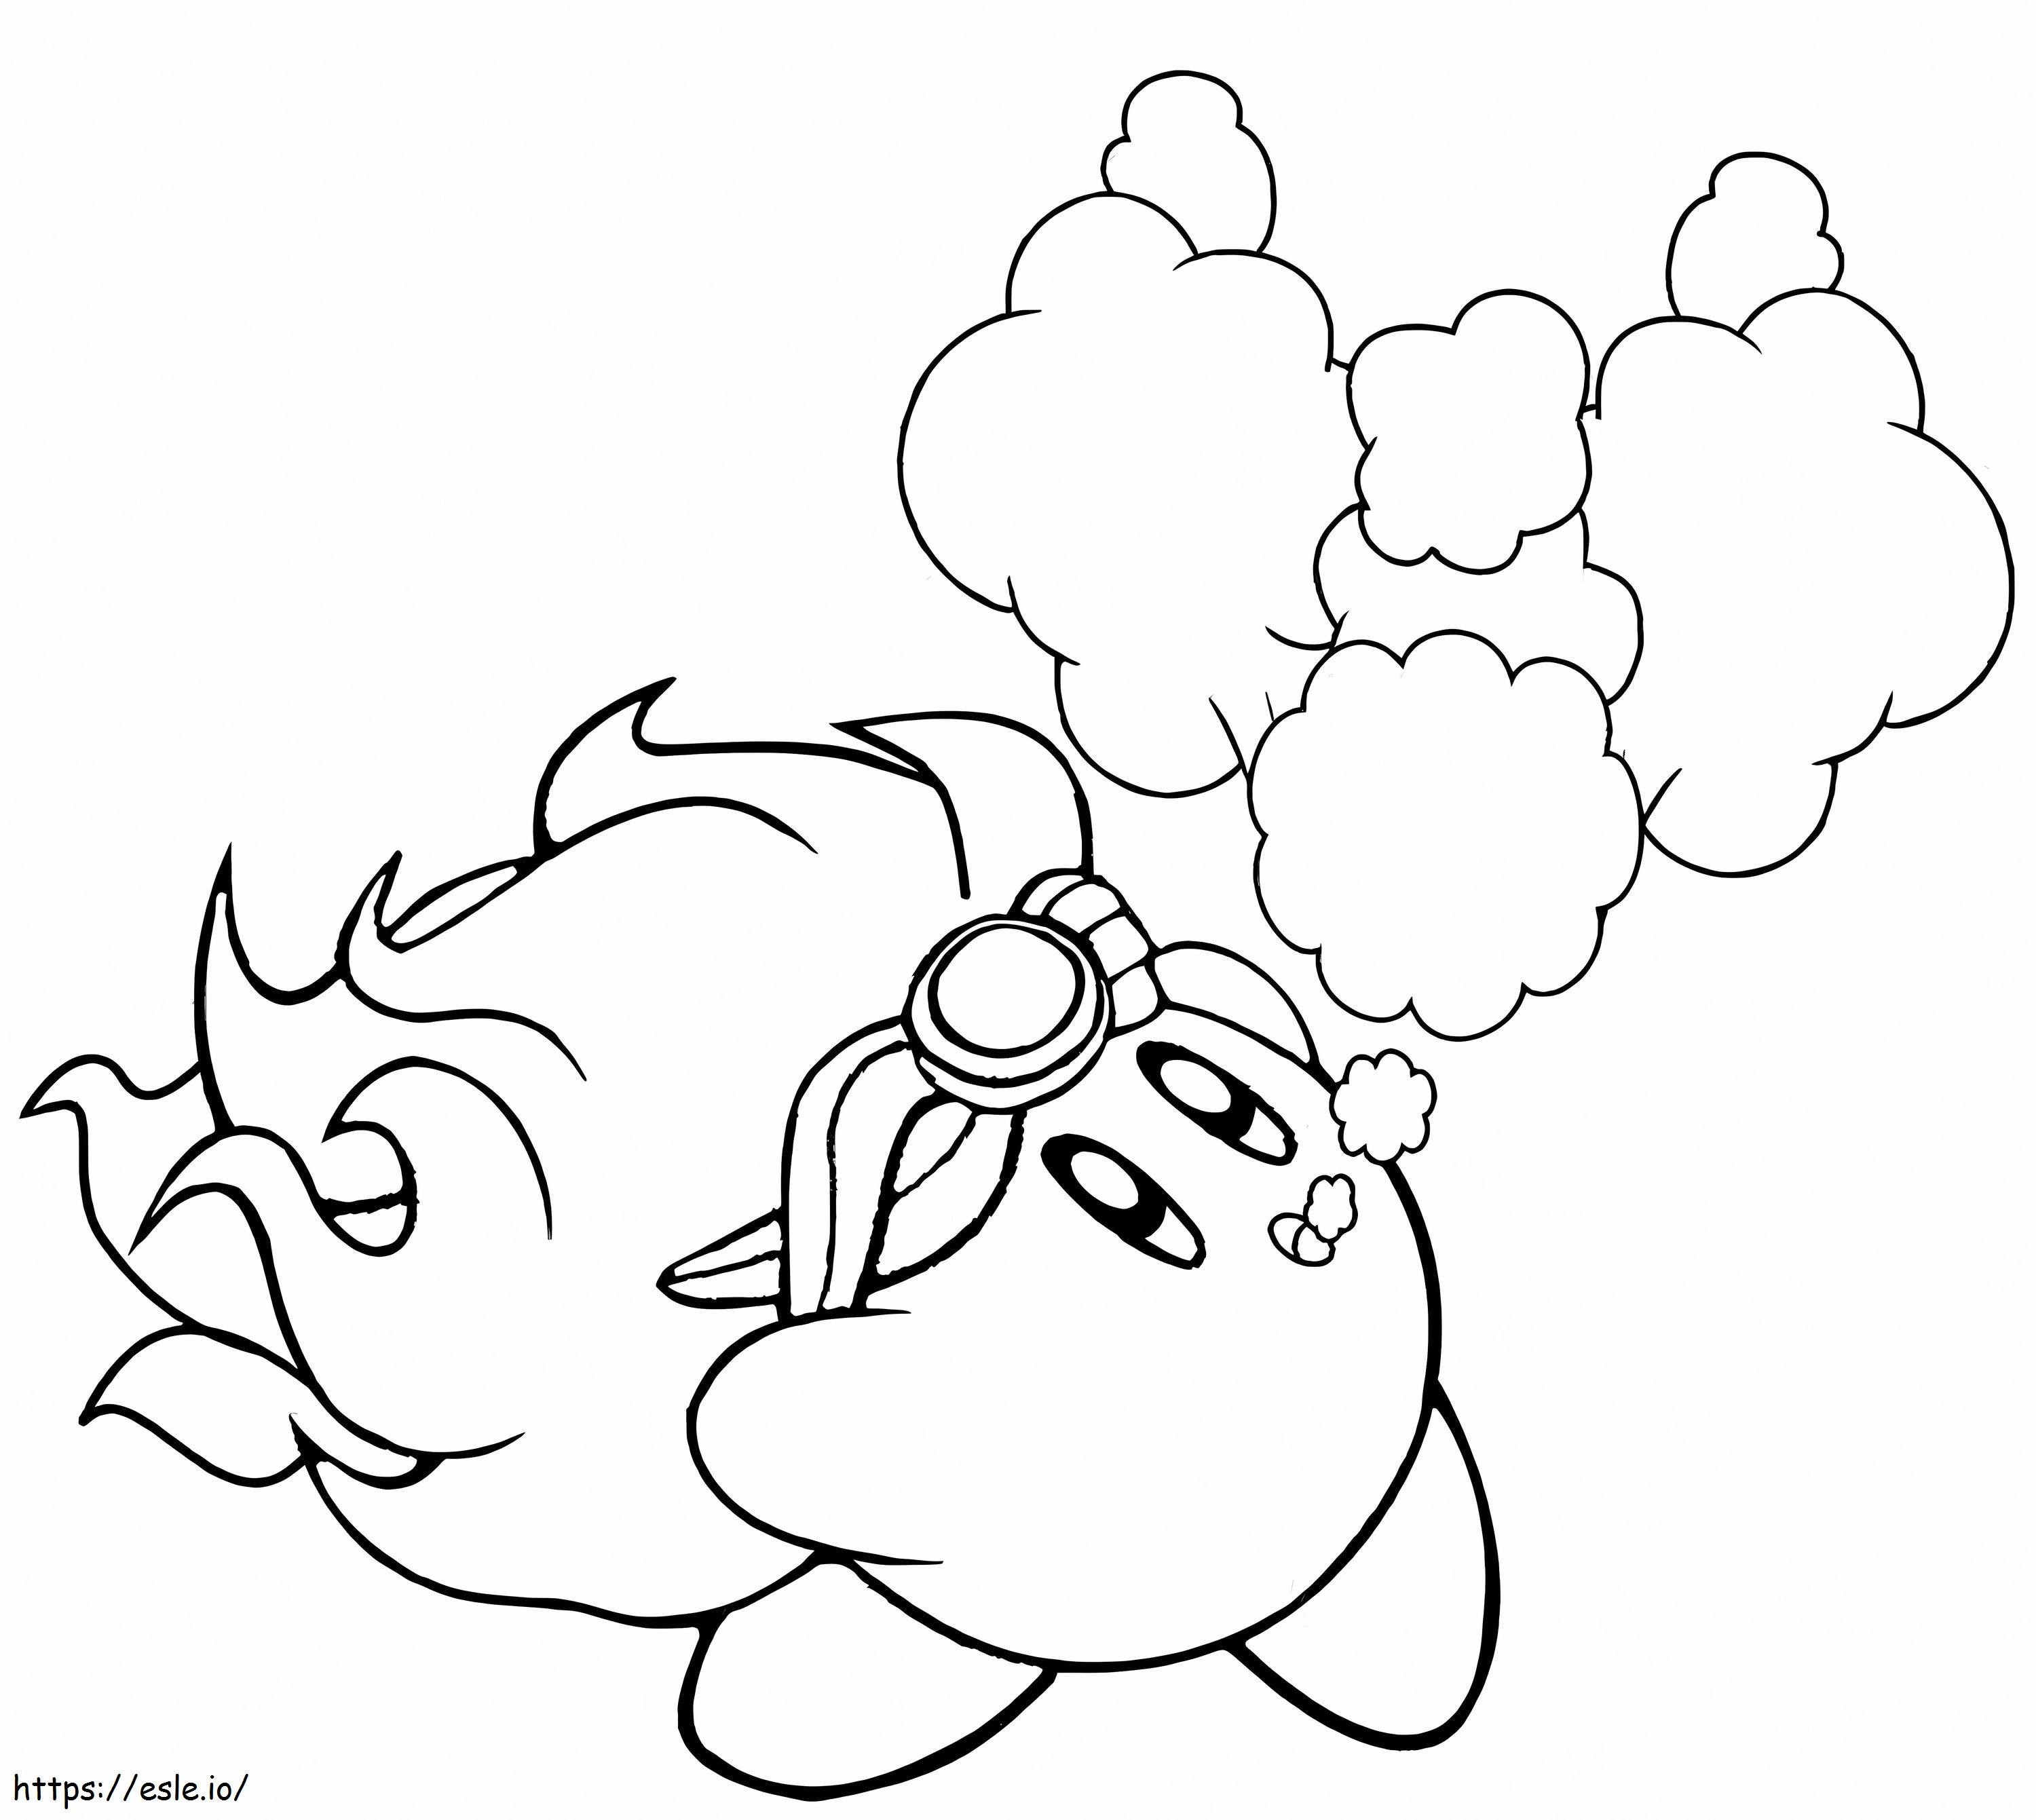 Kirby zum Ausdrucken ausmalbilder